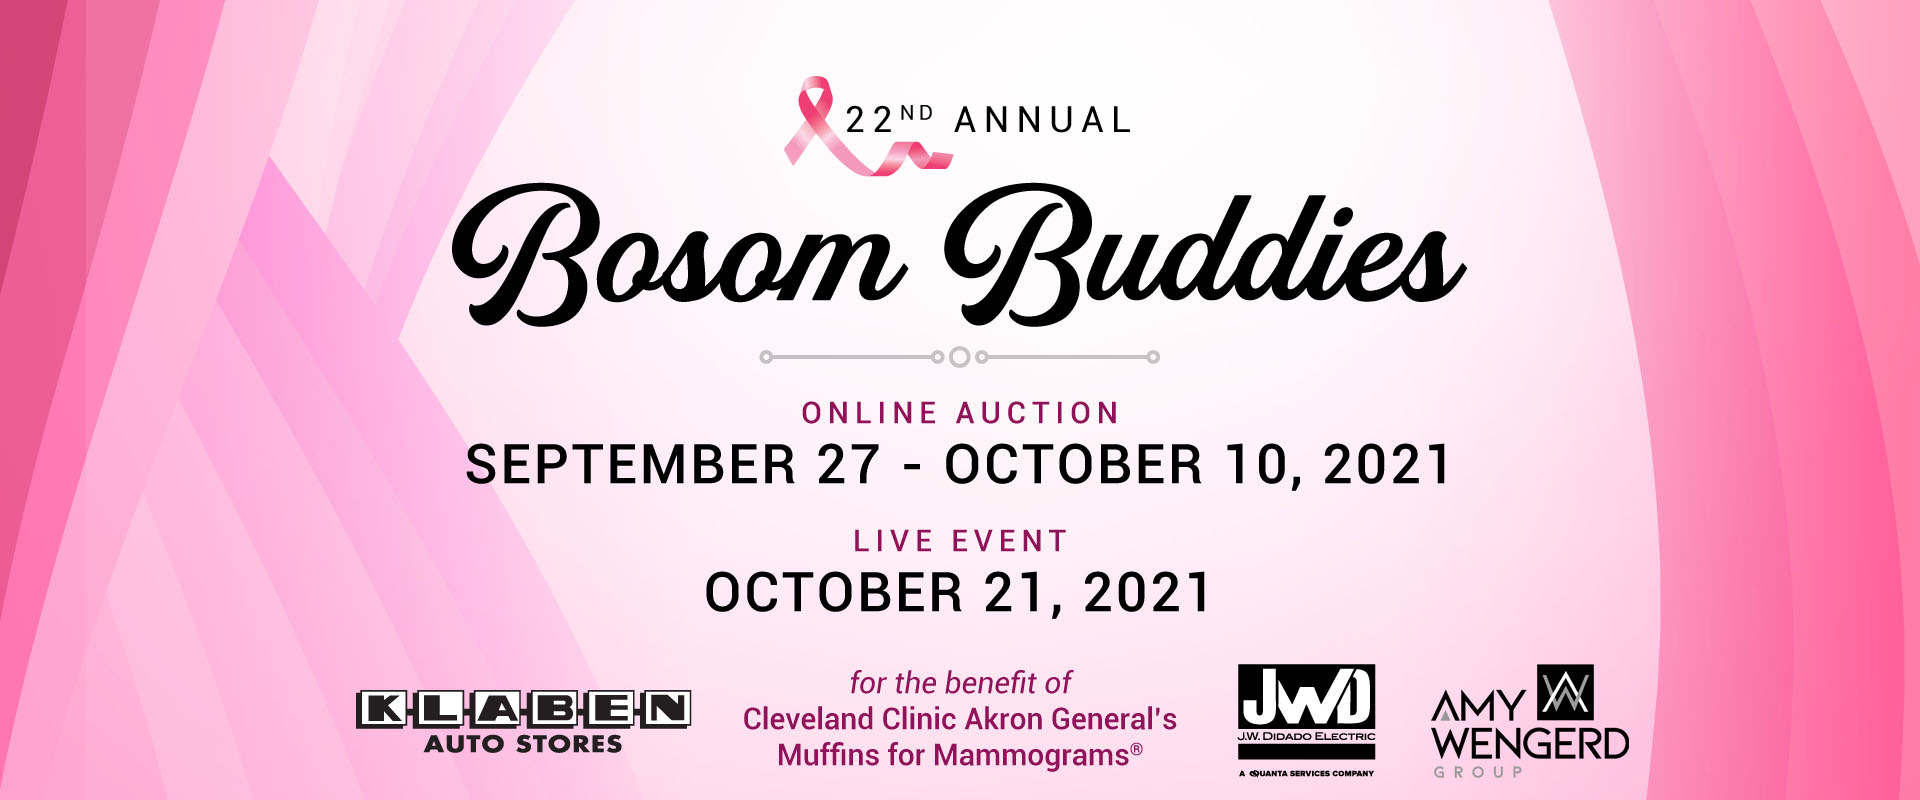 22nd Annual Bosom Buddies Event